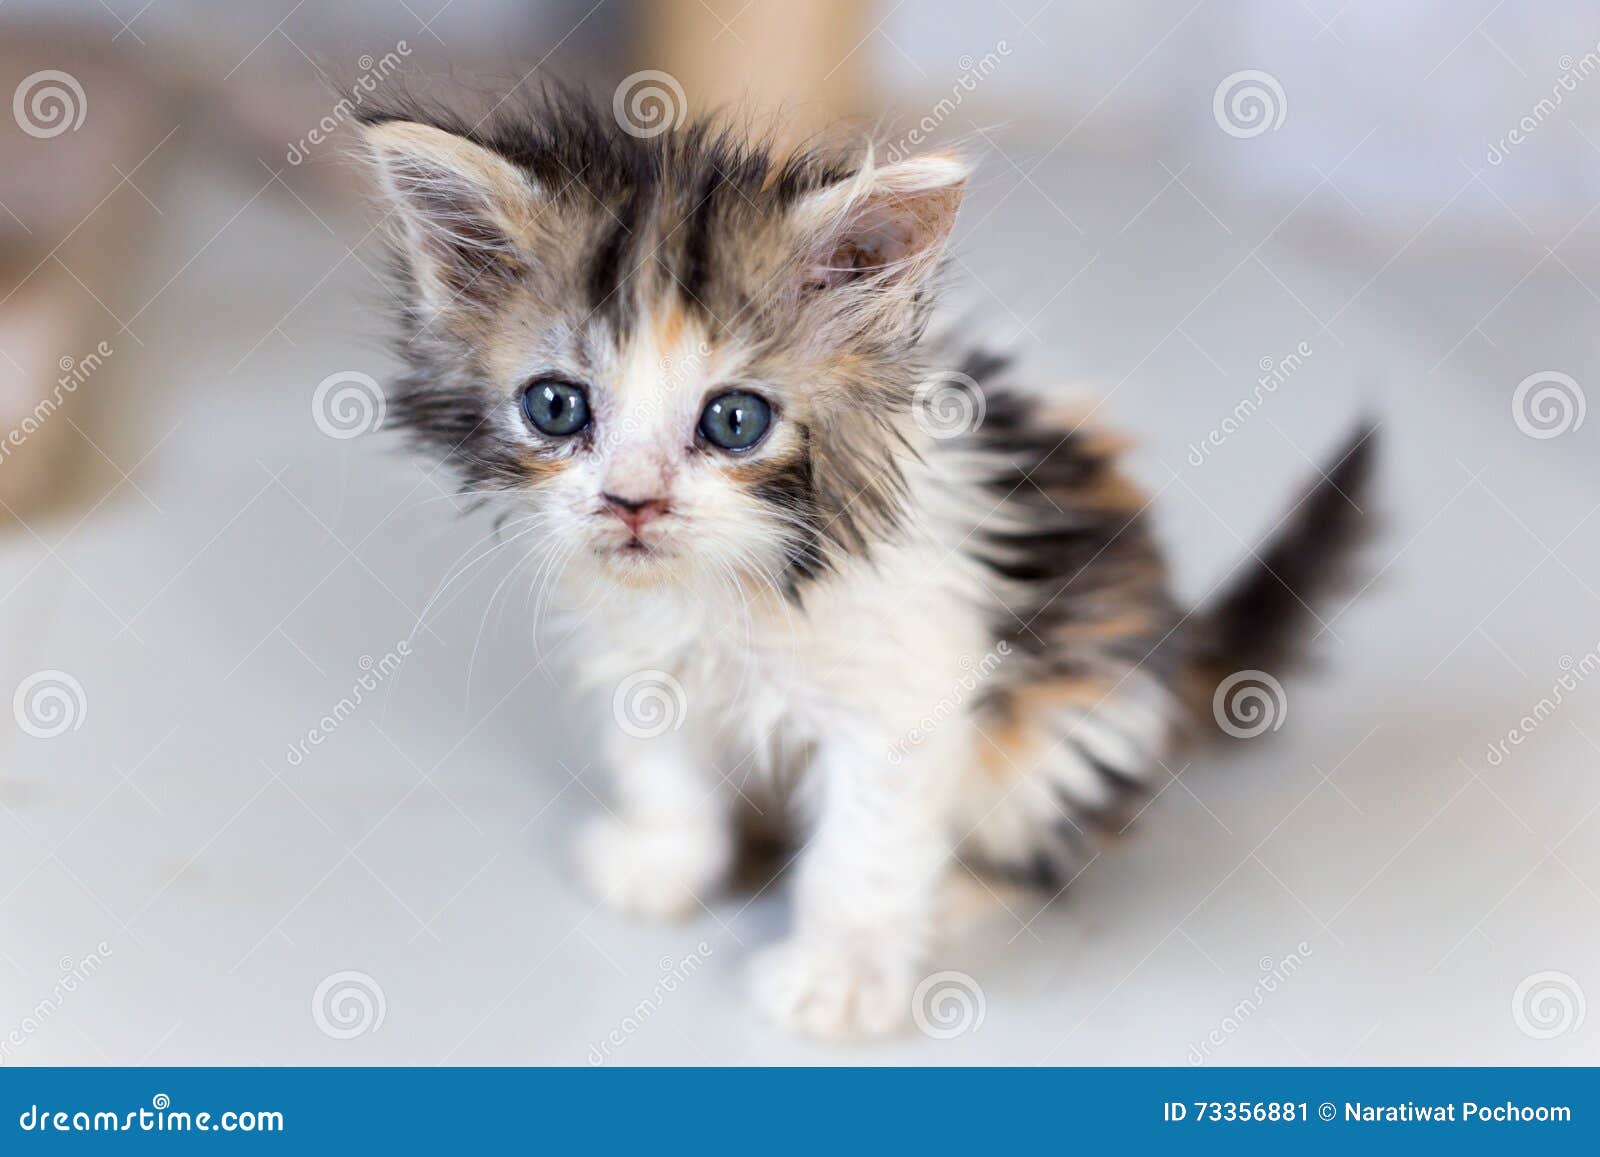 dok Tijdens ~ Overeenkomstig Leuke katten, mooie katten stock afbeelding. Image of haar - 73356881